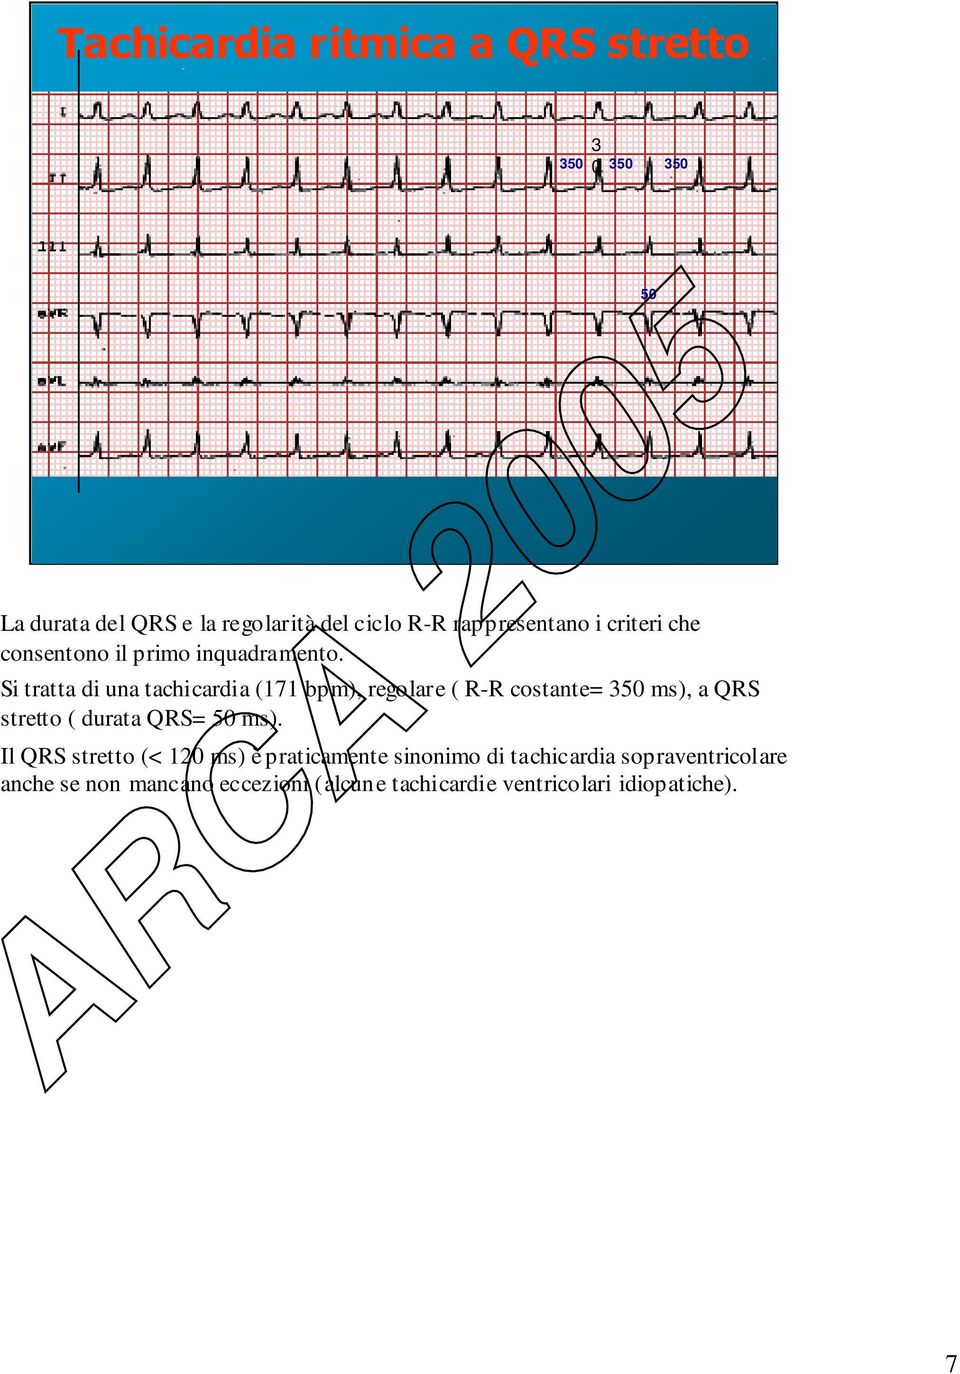 Si tratta di una tachicardia (171 bpm), regolare ( R-R costante= 350 ms), a QRS stretto ( durata QRS= 50 ms).